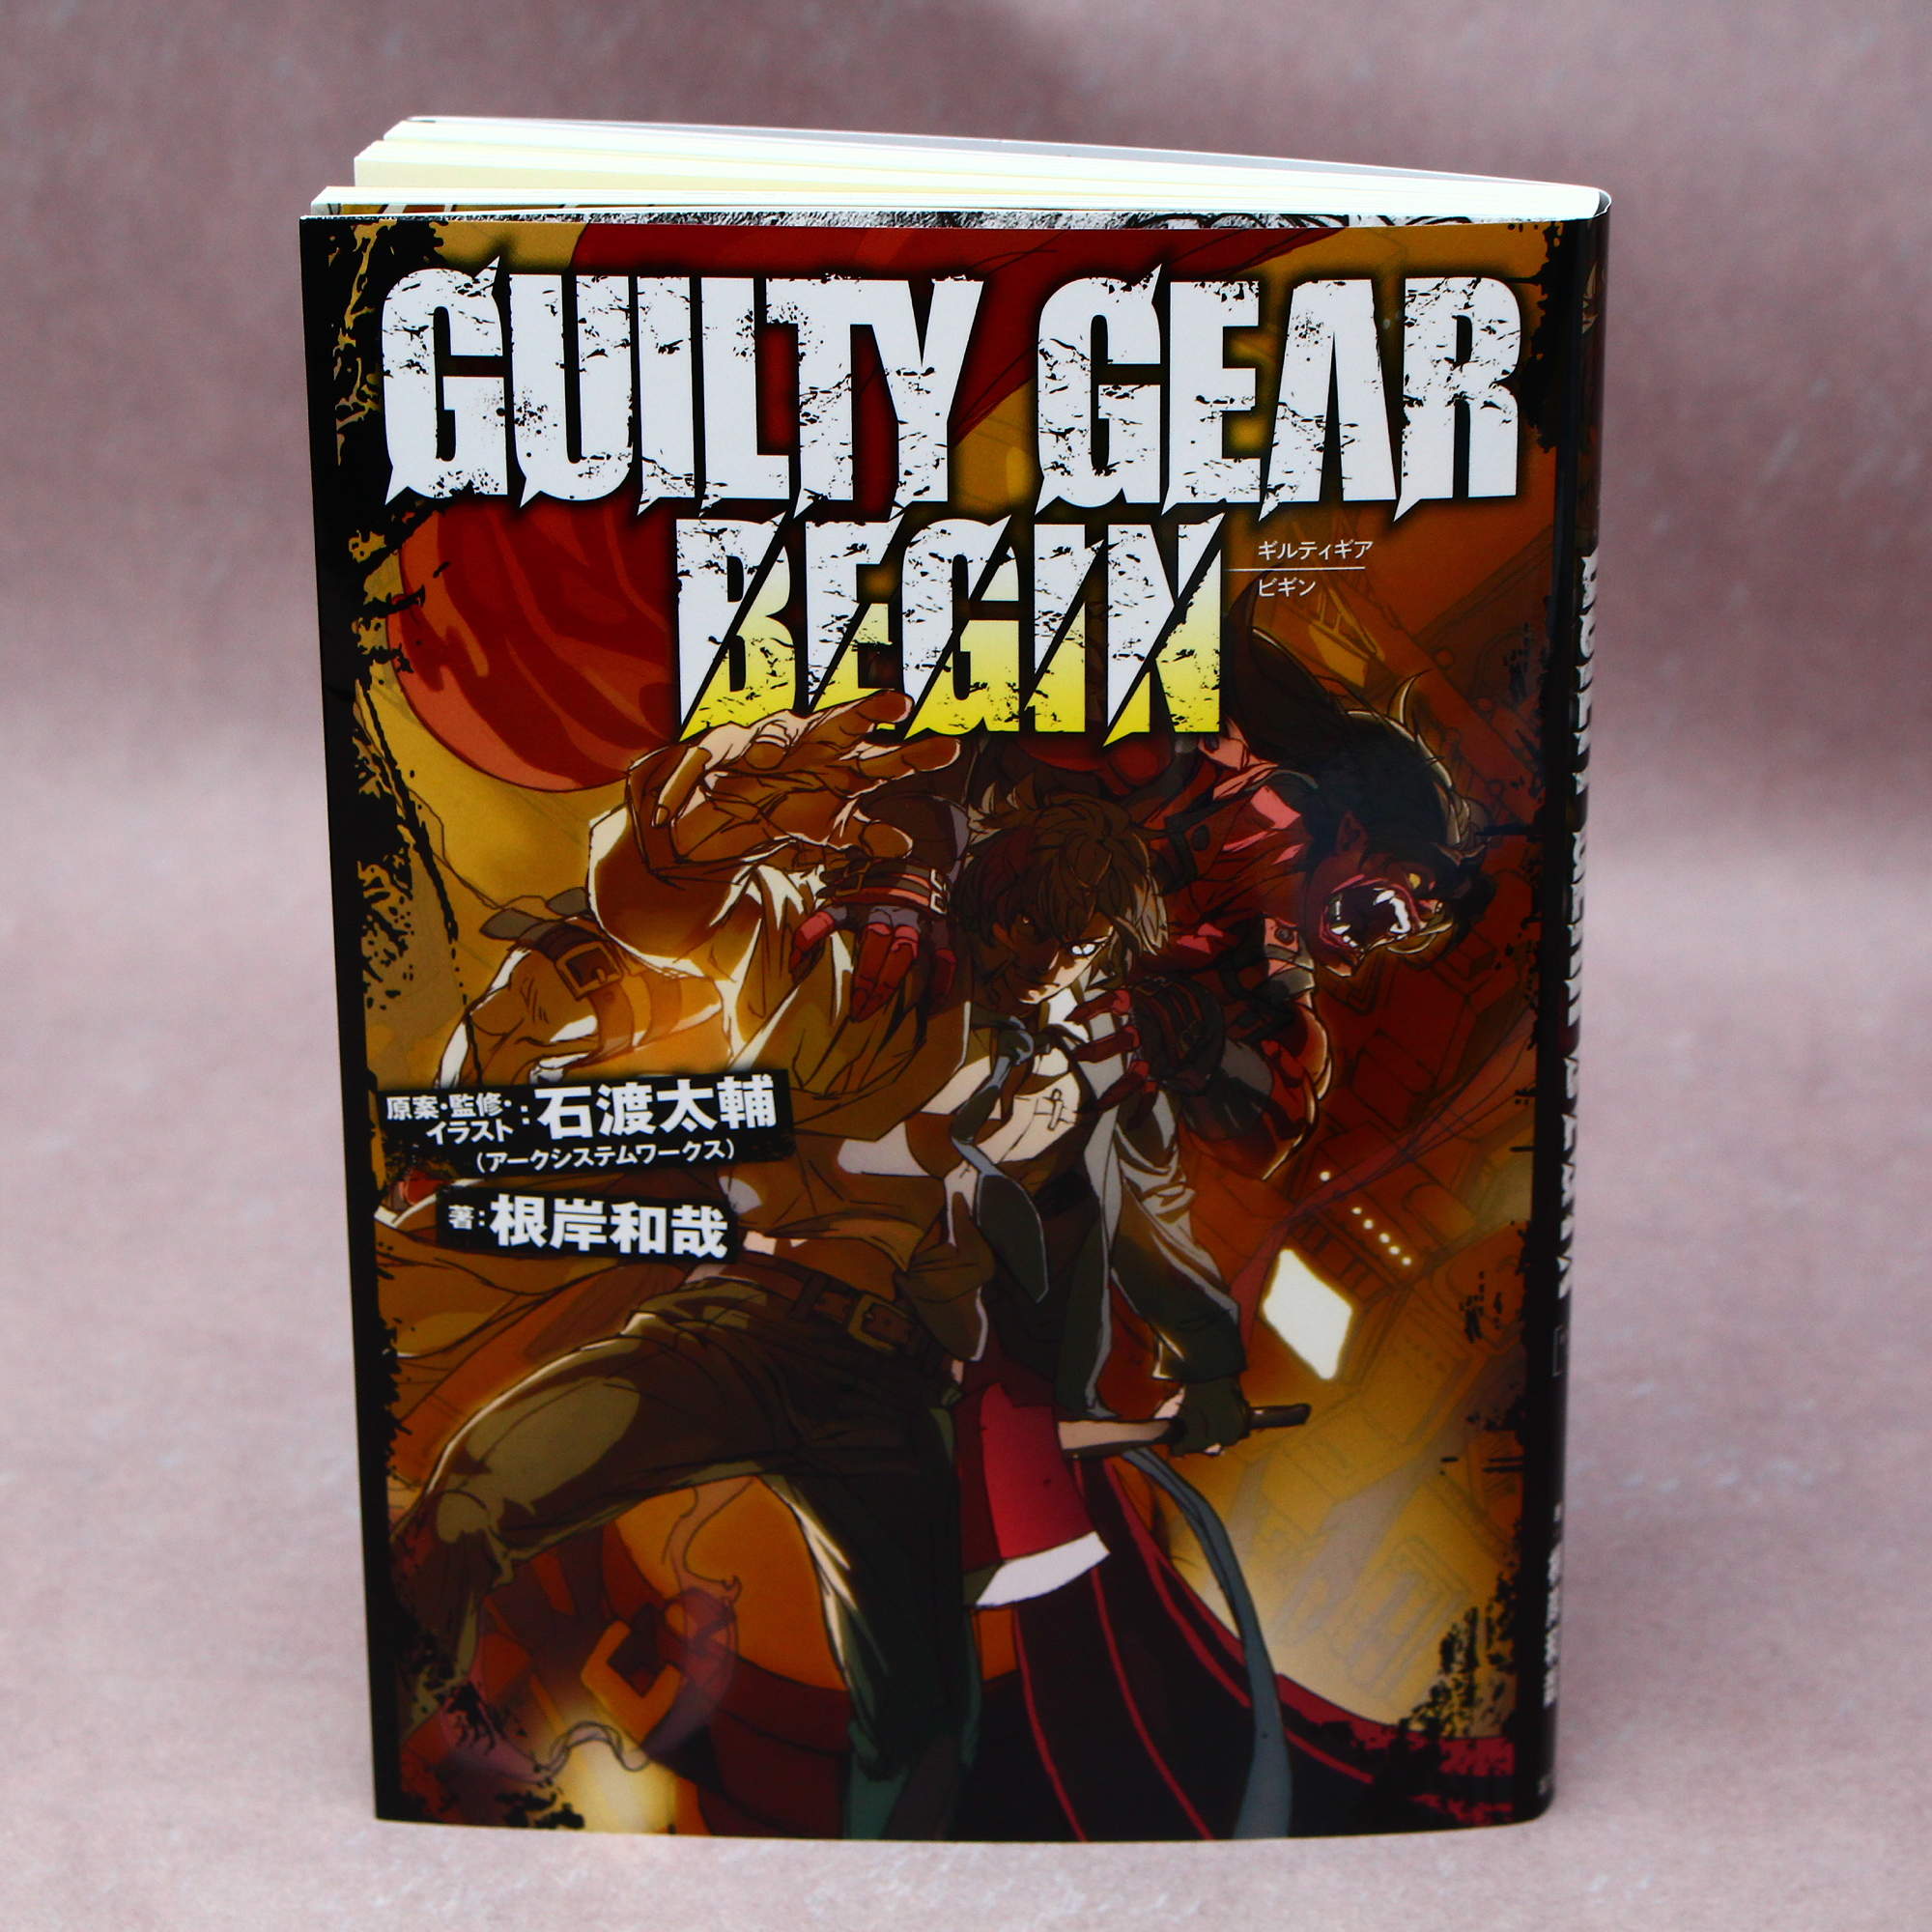 Guilty Gear Begin Novel